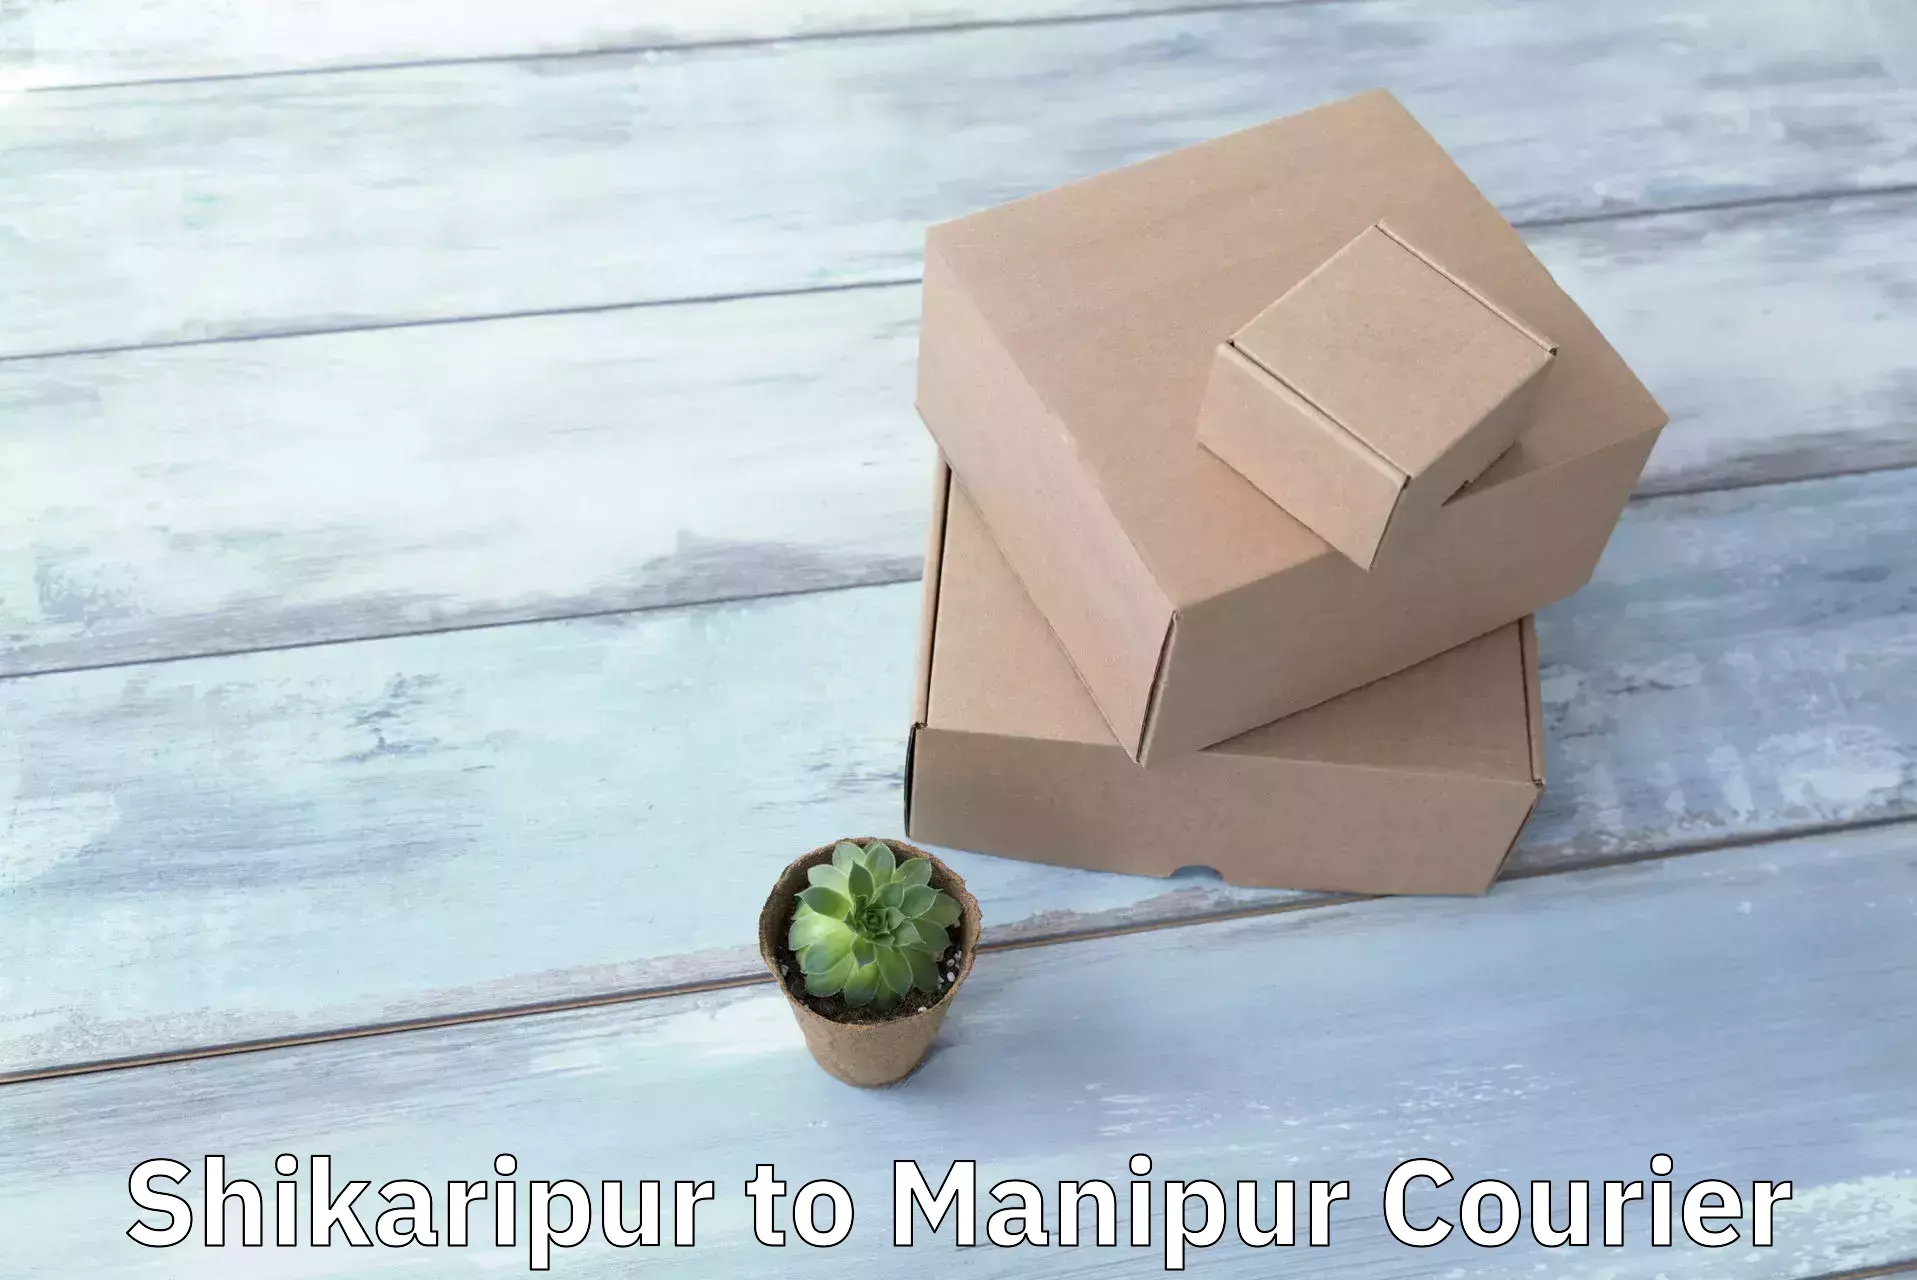 Courier app Shikaripur to Moirang